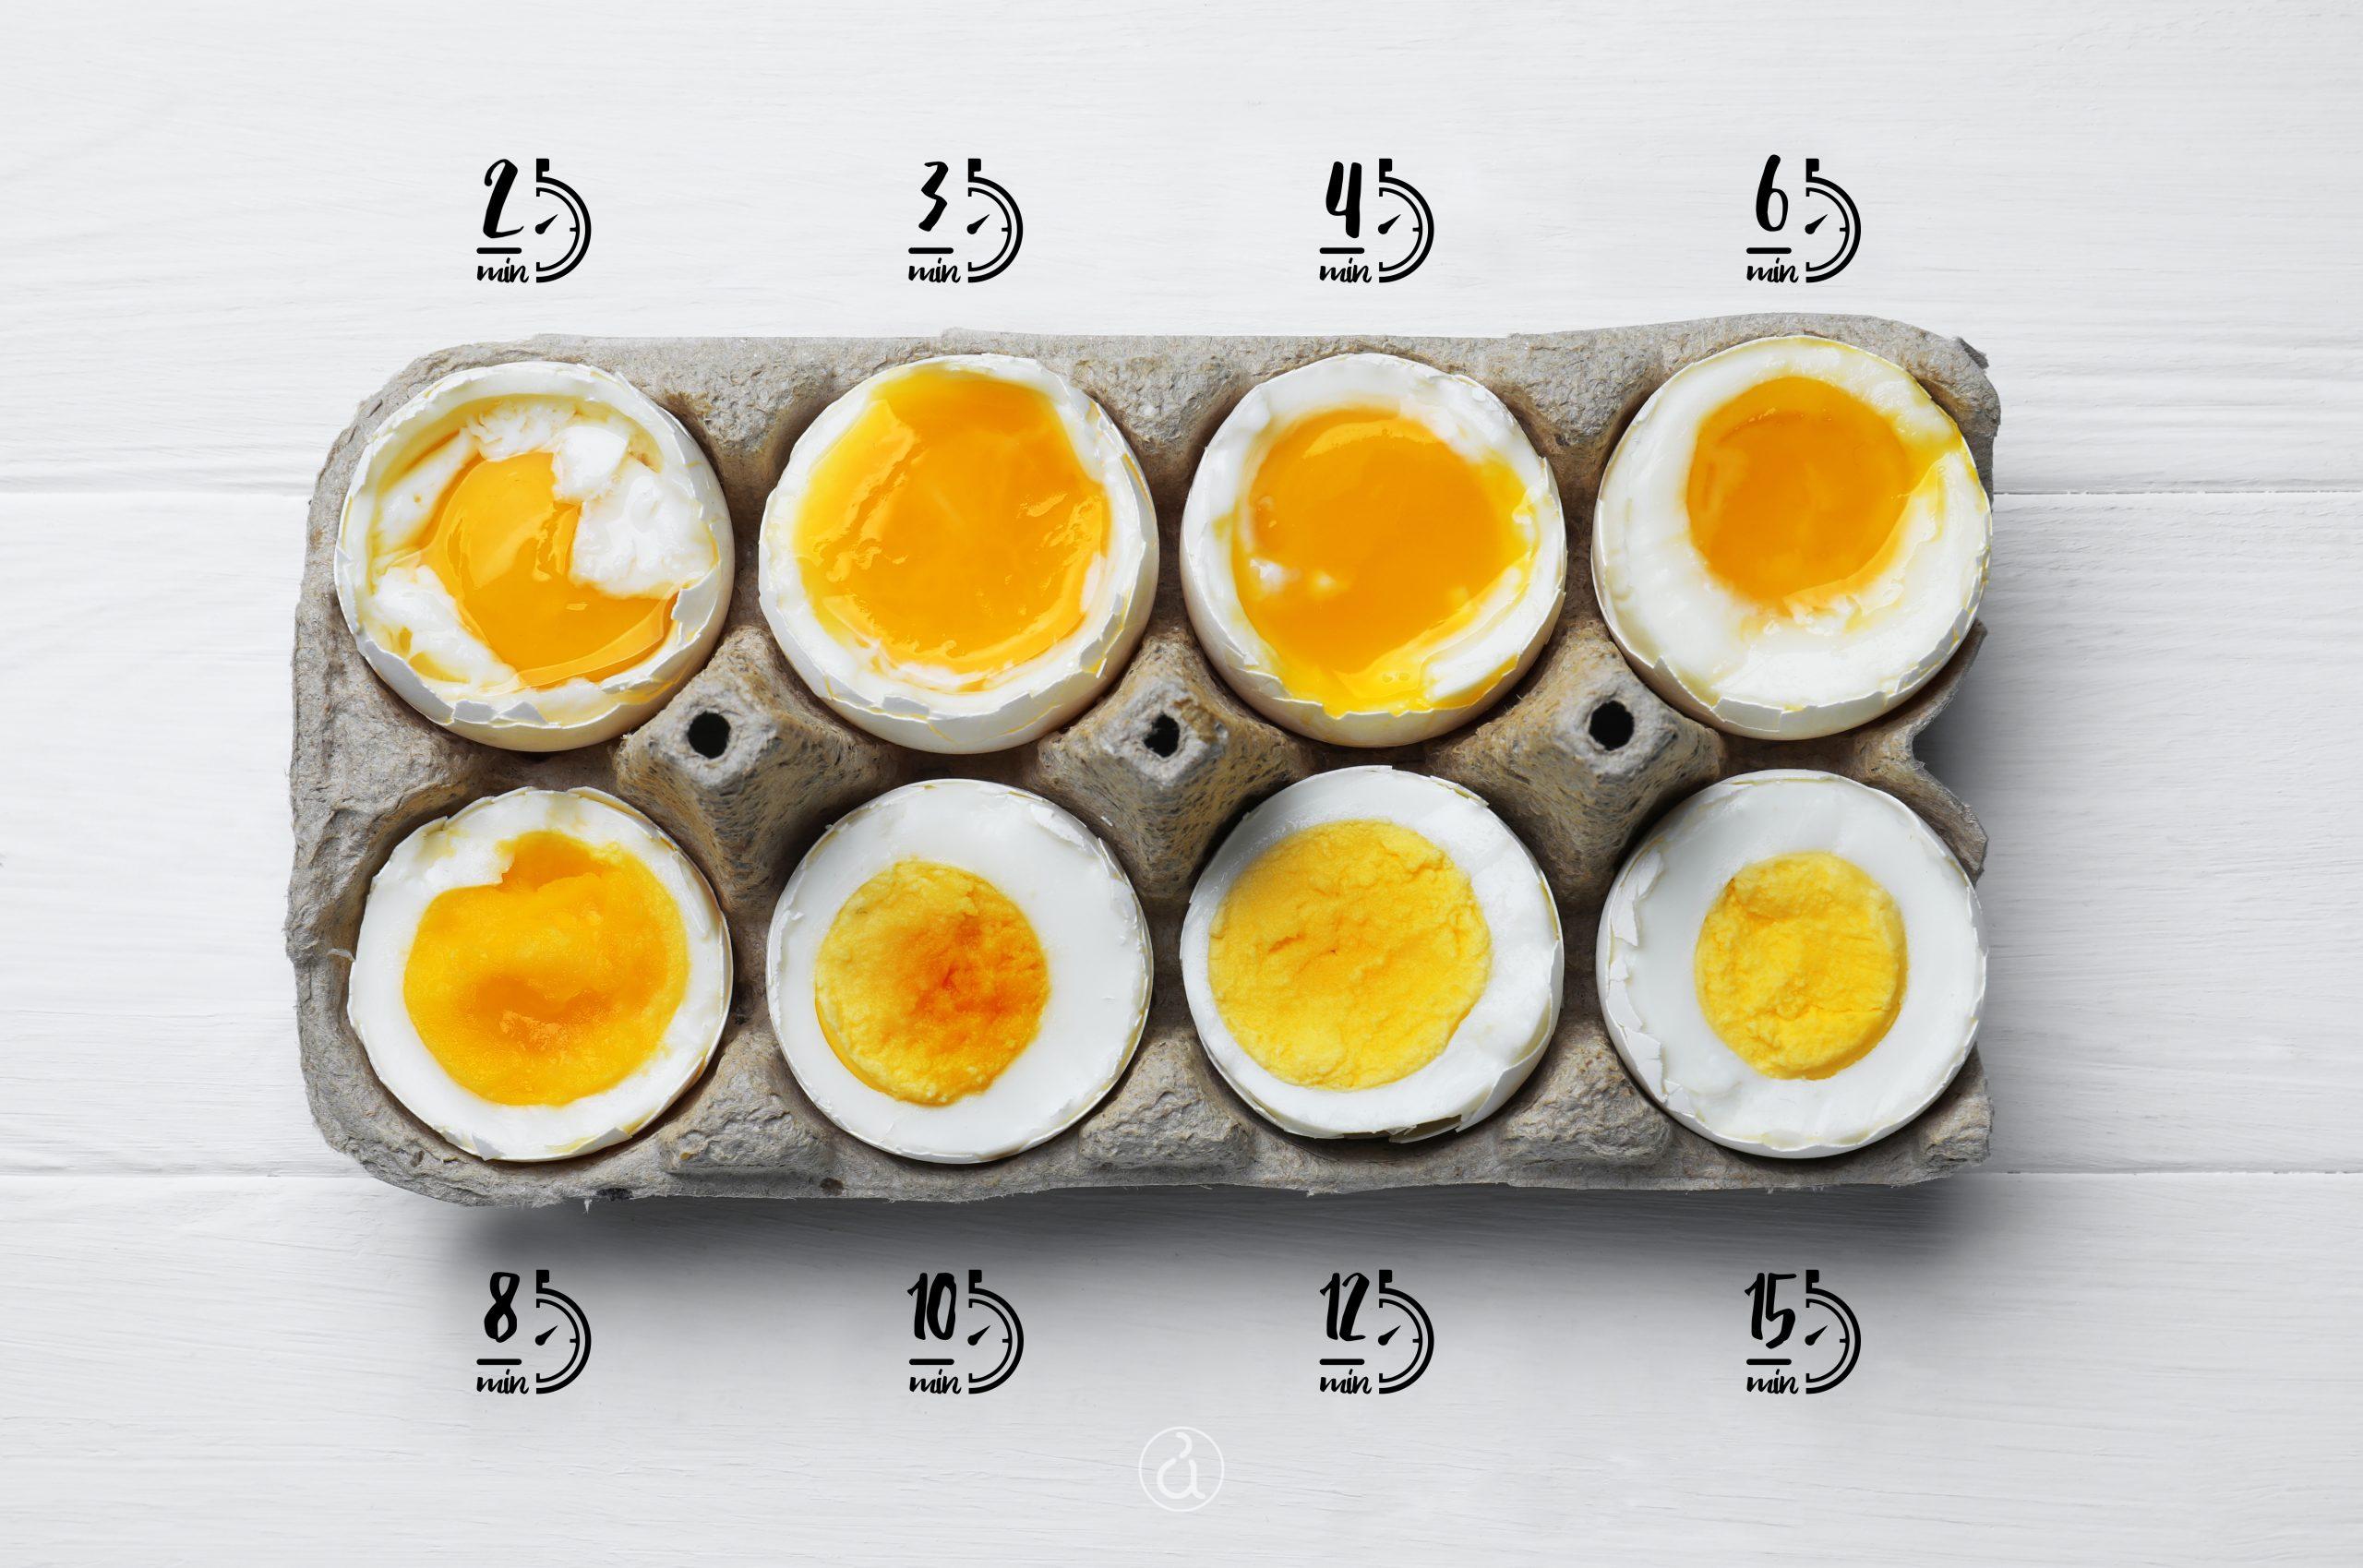 Βραστό αυγό μελάτο ή σφιχτό;